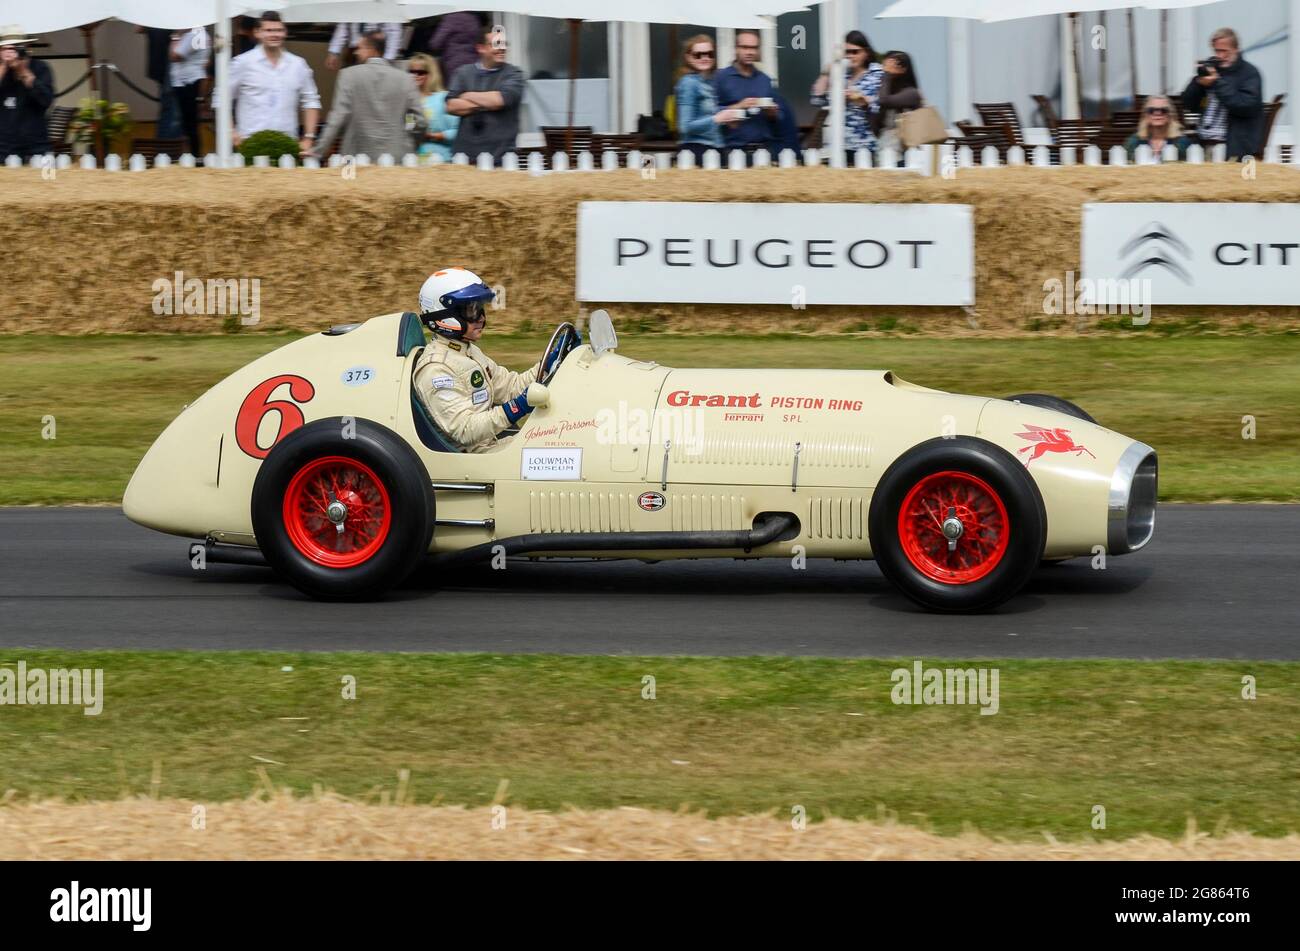 1952 Ferrari 375 'Grant piston Ring Special' qui monte la colline au Goodwood Festival of Speed 2013. Voiture Grand Prix adaptée à la course Indy 500 Banque D'Images